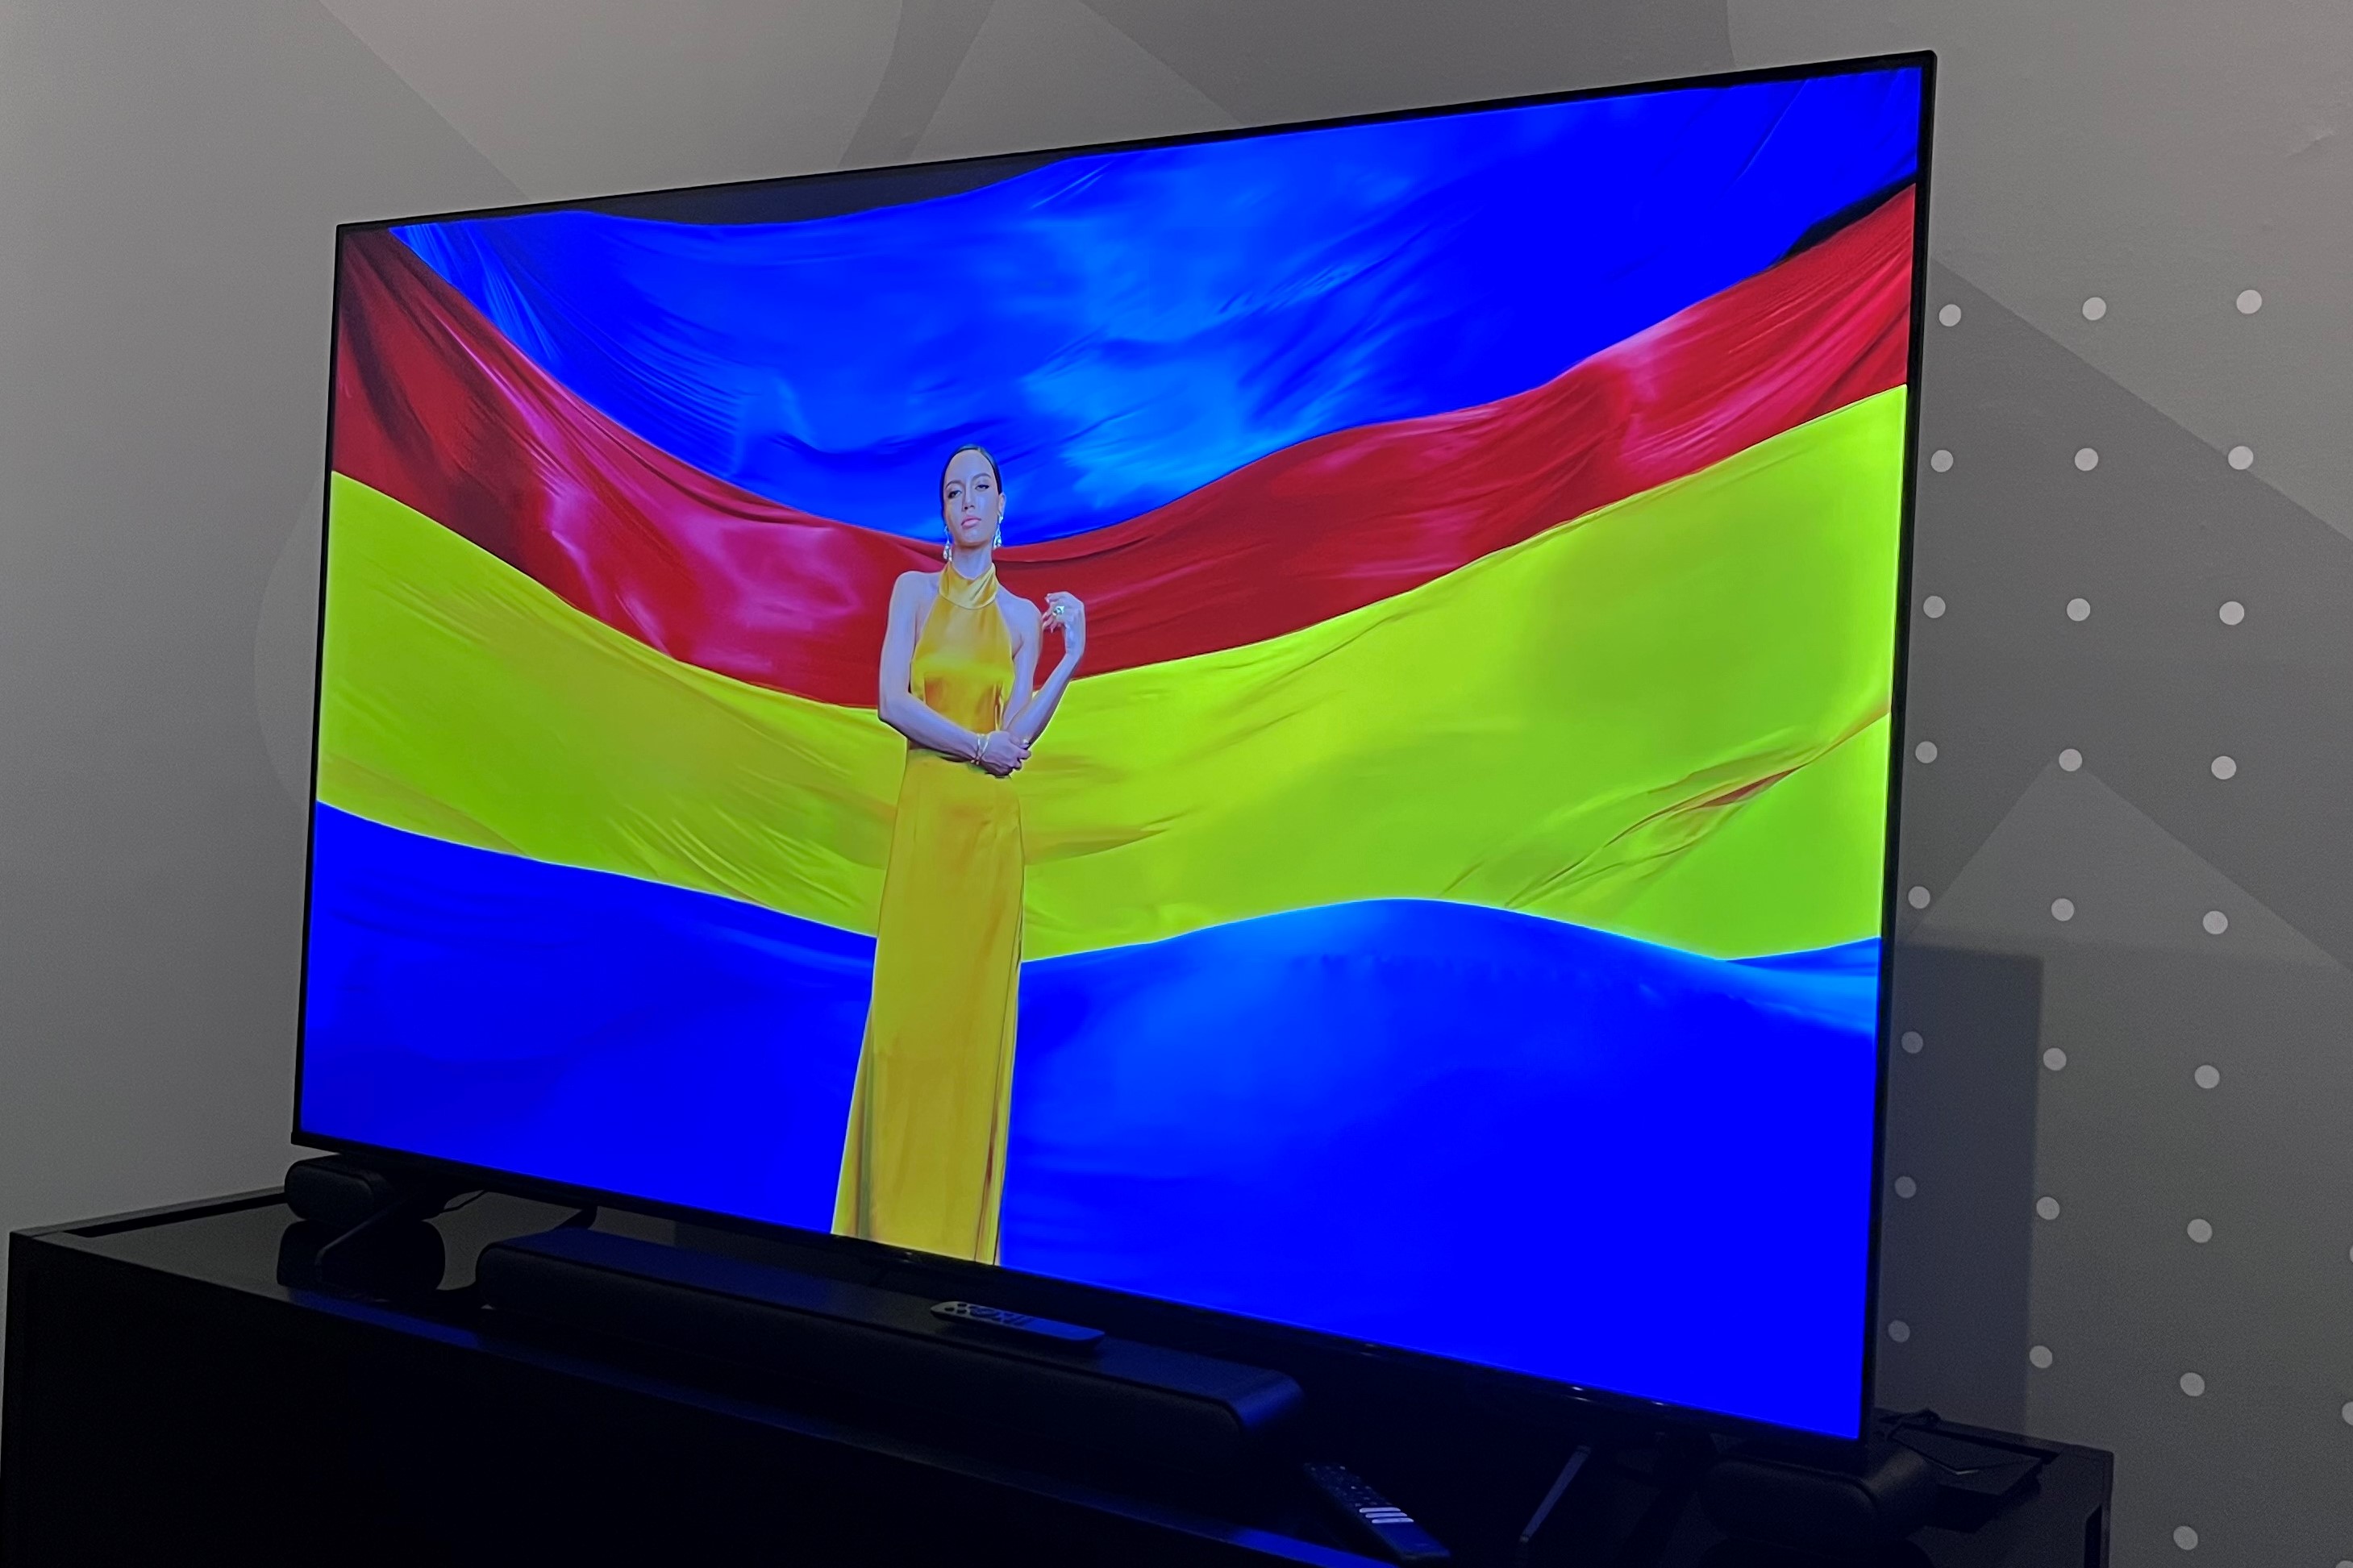 TCL S4 TV montrant une image colorée